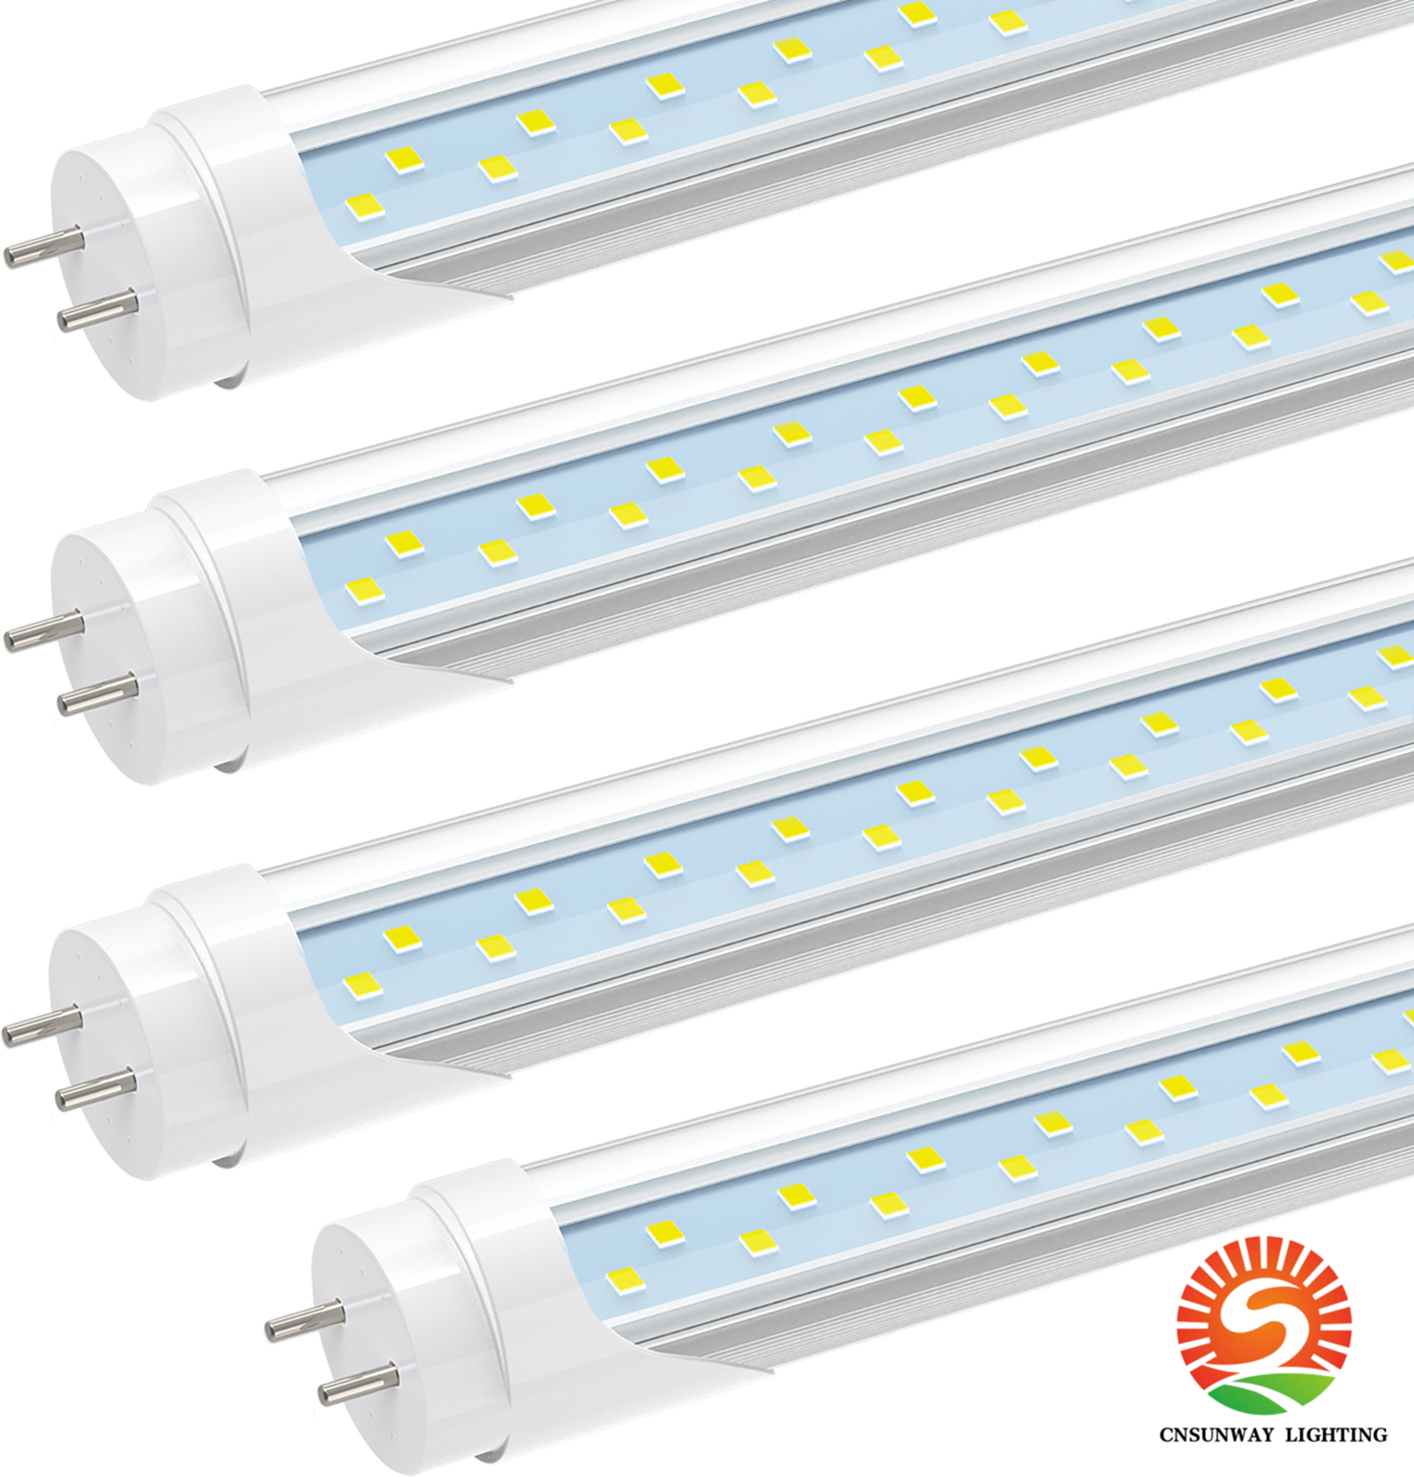 Ampoules à tube LED de 0,9 m, G13 bi-PinT8 fluorescentes 18 W 6000 K blanc froid, remplacements T10 T12 de 91,4 cm, retirer le ballast, alimentation à double extrémité, transparent, éclairage de magasin de 0,9 m.